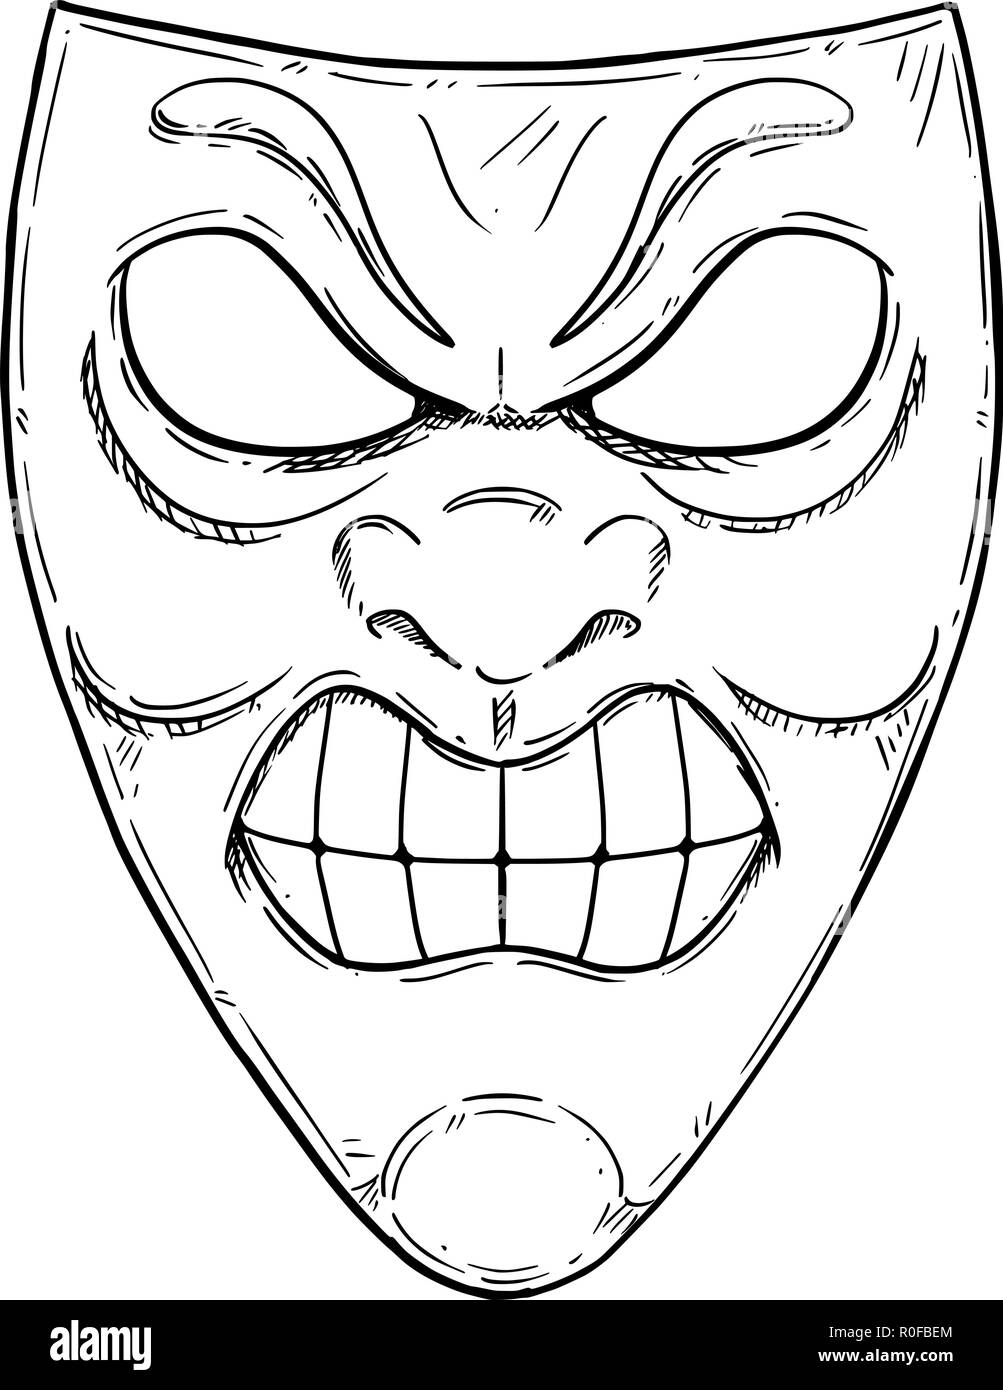 Vektor Künstlerische Zeichnung Abbildung: Wütende Aggressive Comedy Maske Stock Vektor